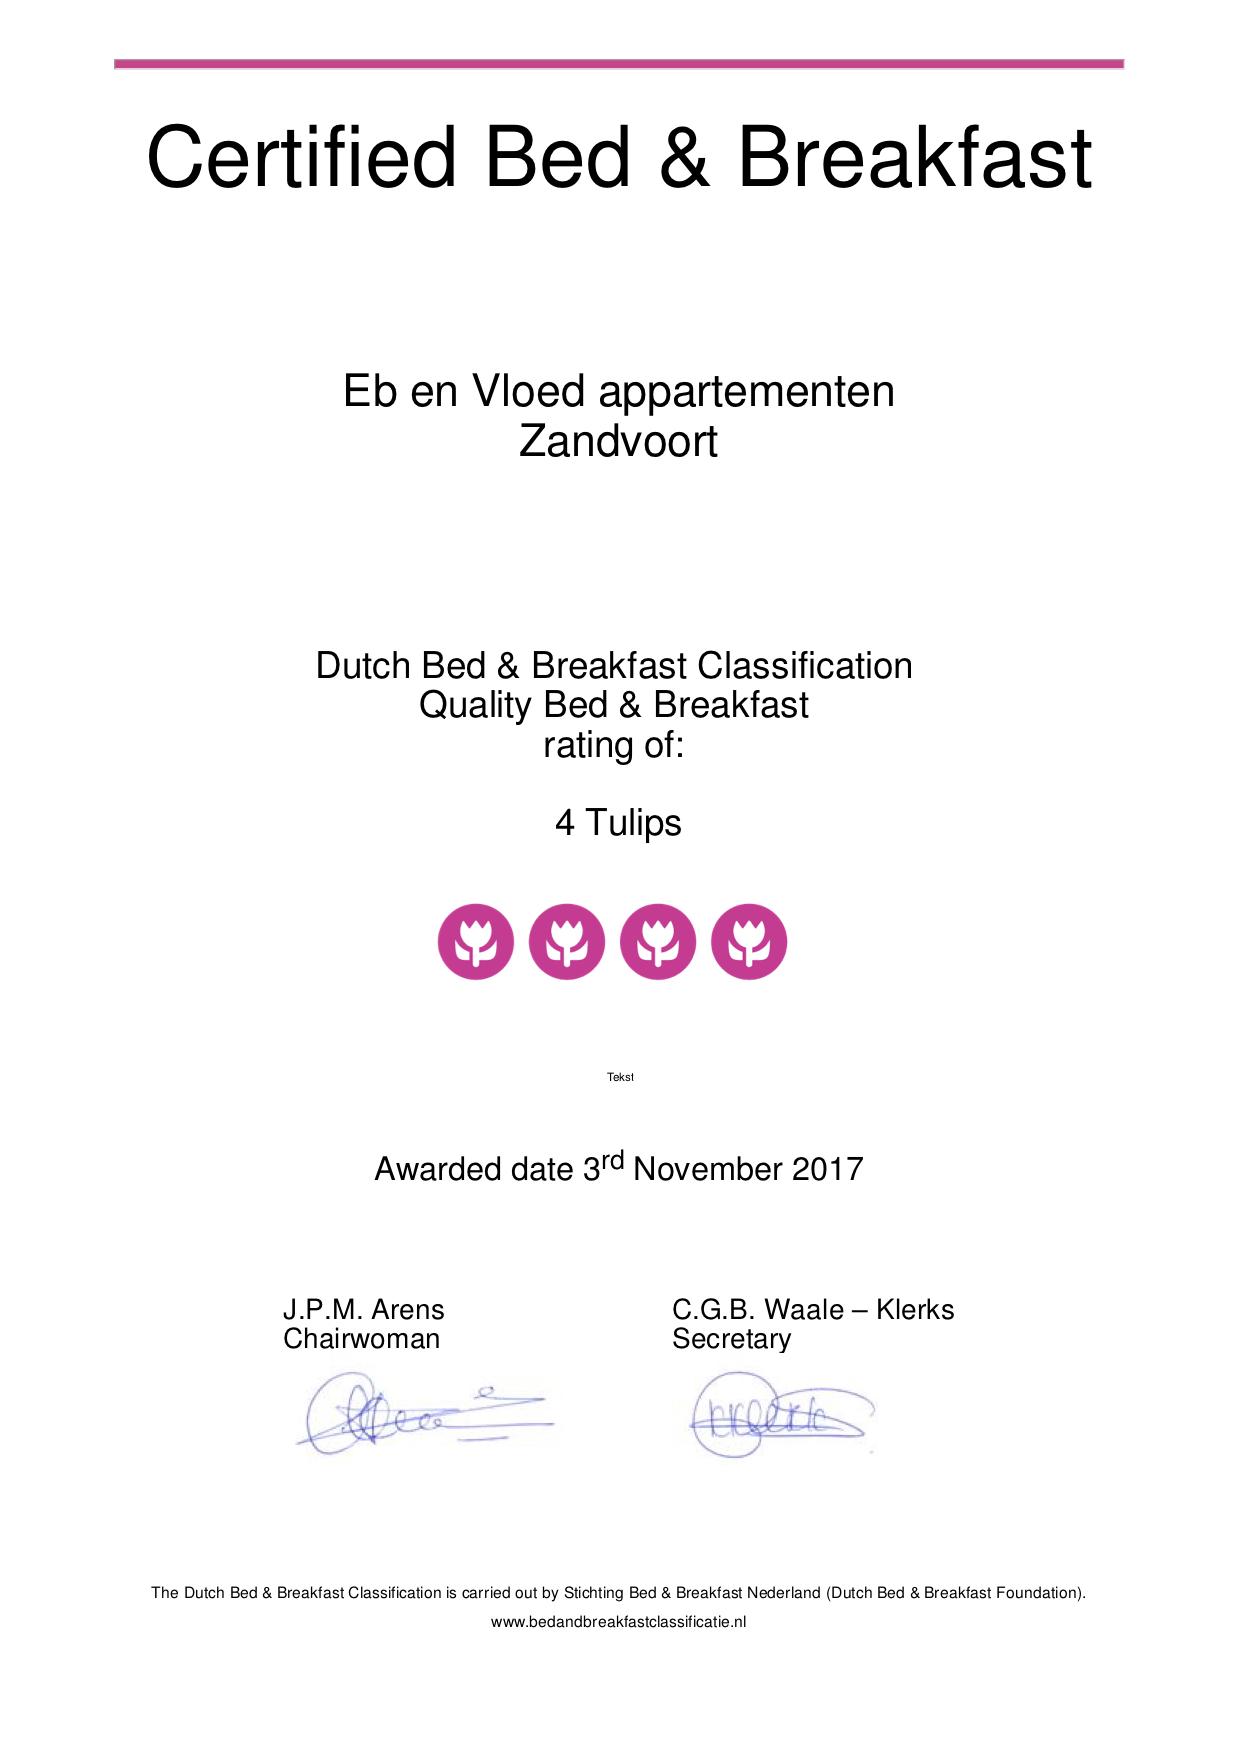 https://www.bedandbreakfast.nl/bed-and-breakfast-nl/zandvoort/eb-en-vloed-appartementen/72454/